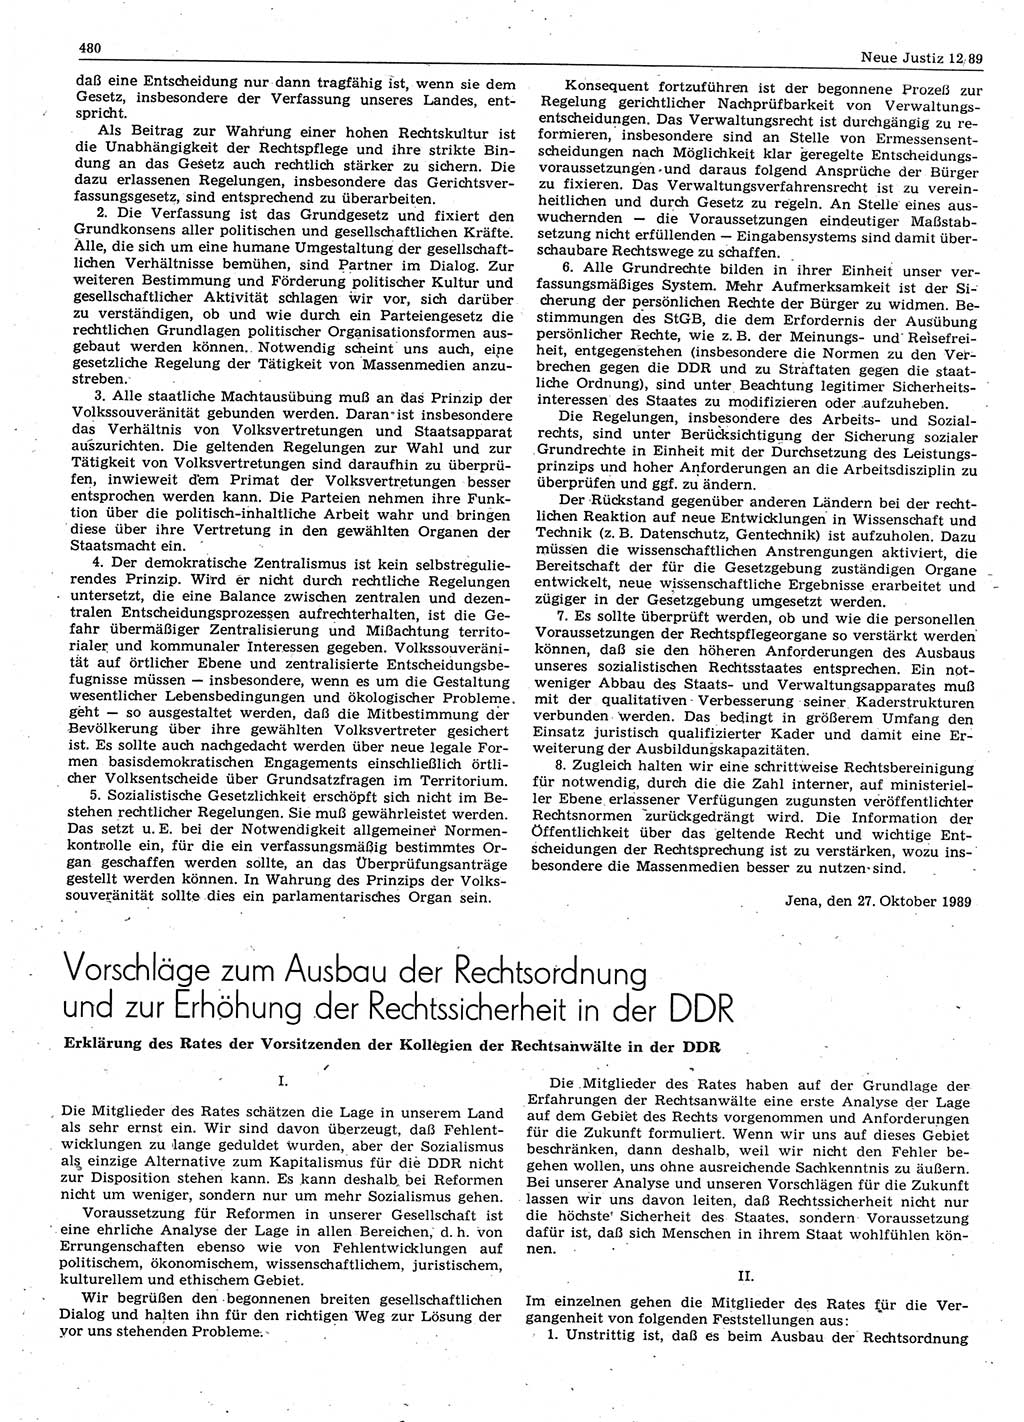 Neue Justiz (NJ), Zeitschrift für sozialistisches Recht und Gesetzlichkeit [Deutsche Demokratische Republik (DDR)], 43. Jahrgang 1989, Seite 480 (NJ DDR 1989, S. 480)